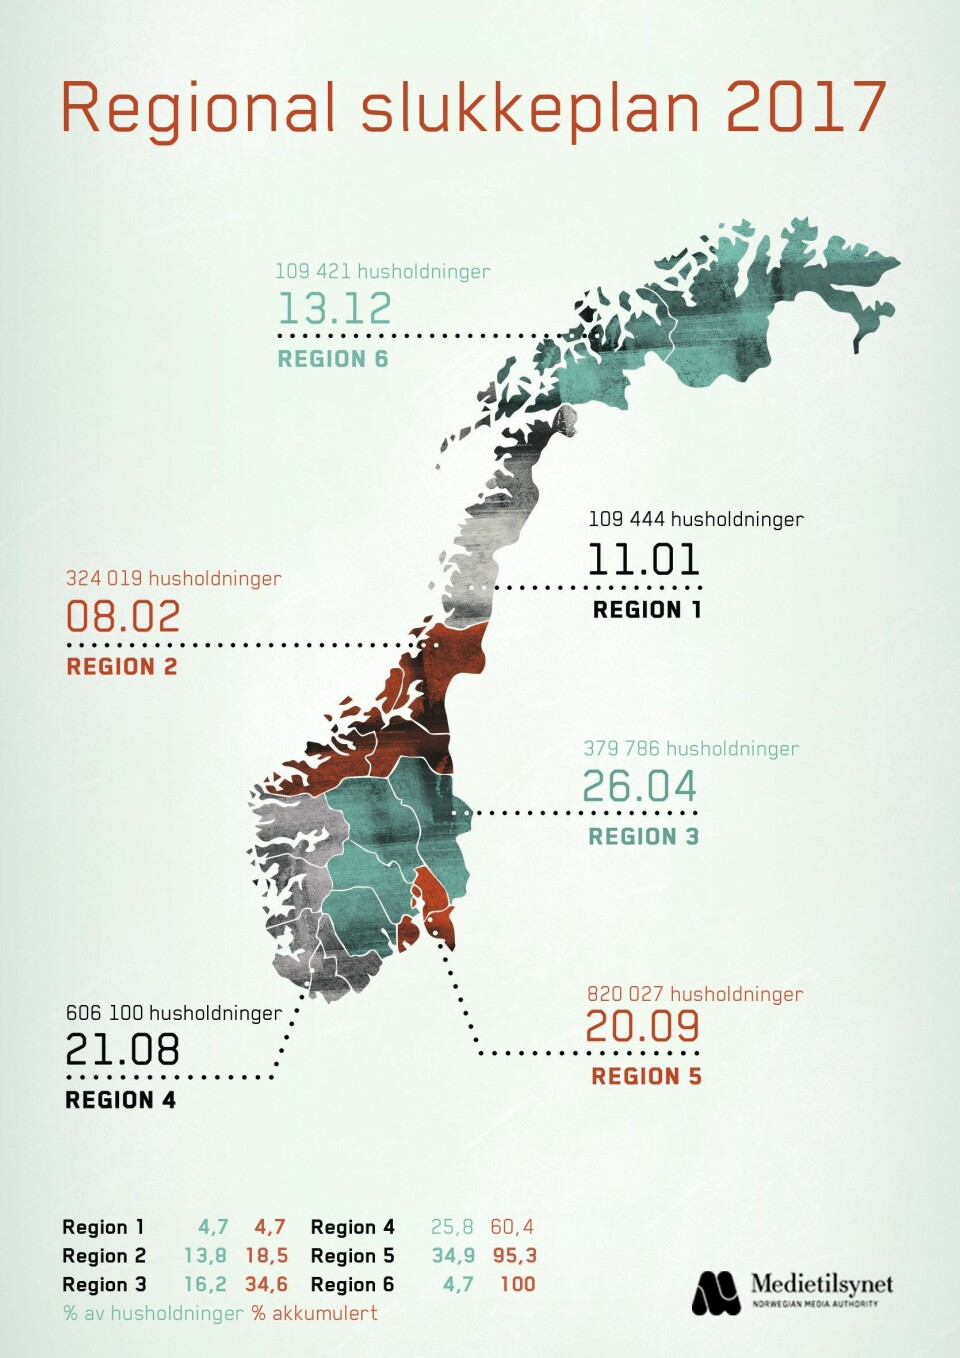 Når NRK slukker sine FM-sendinger i region 5 den 20. september, berøres over 820.000 husholdninger av dette. Illustrasjon: Medietilsynet